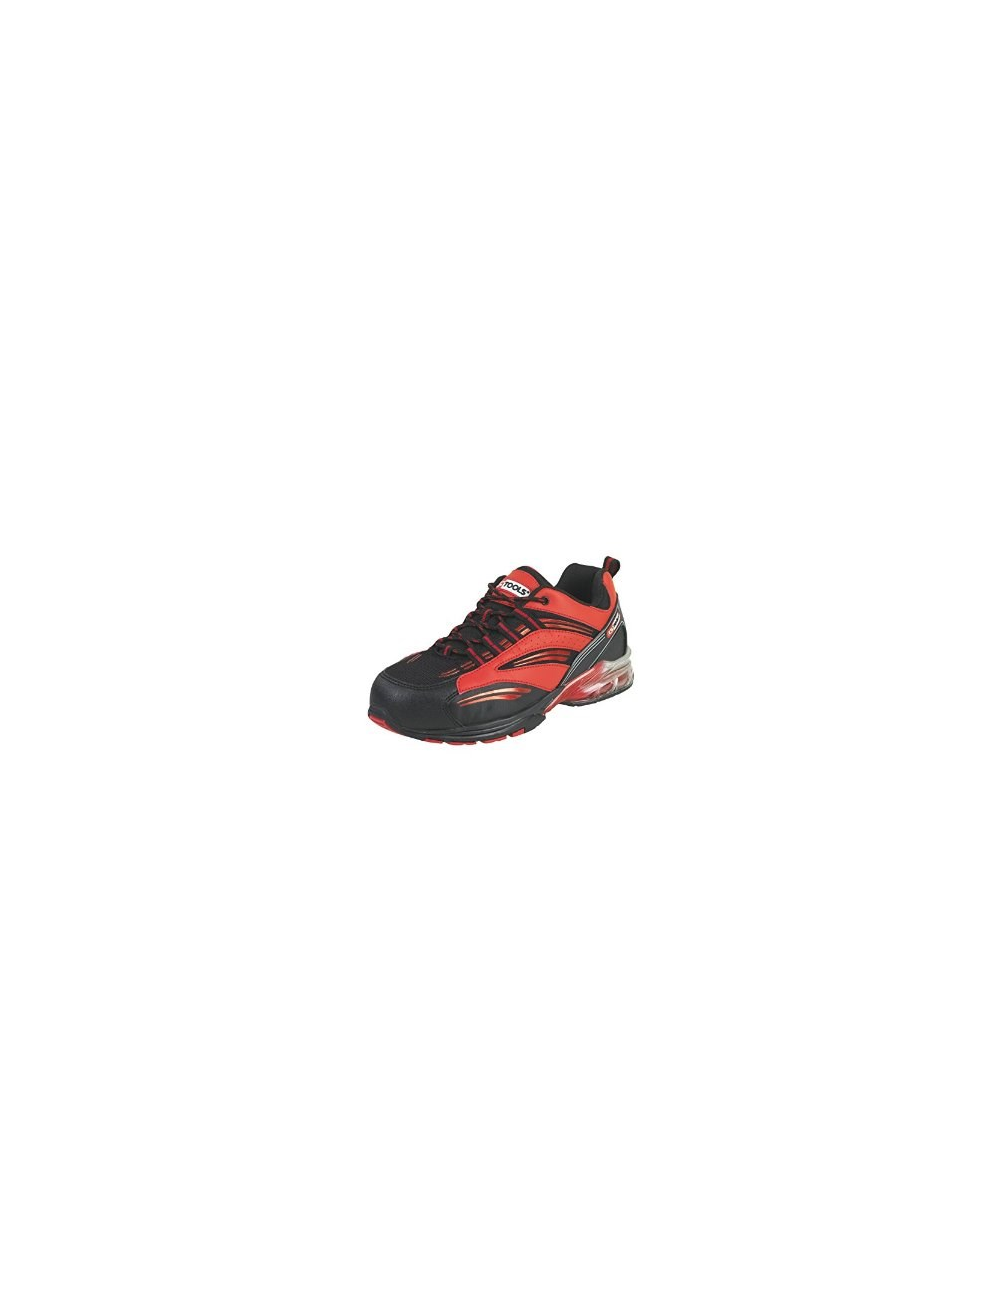 Chaussures de sécurité - Modèle coussin d'air rouge T37